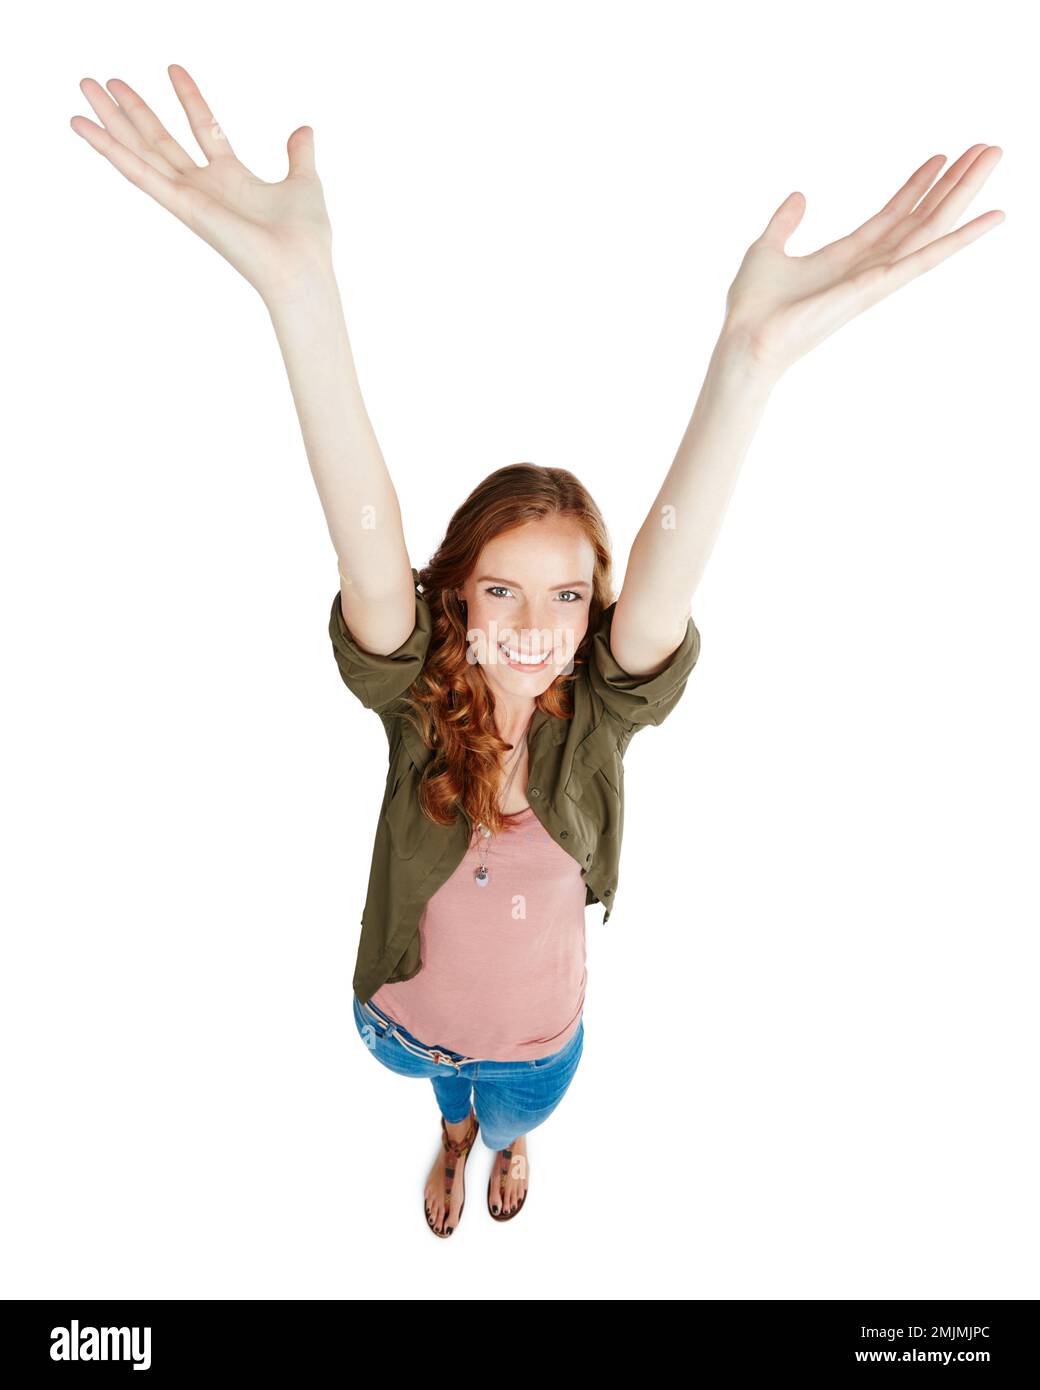 Mettere le mani in su come voi appena non si preoccupano. una giovane donna con le braccia sollevate su uno sfondo bianco. Foto Stock